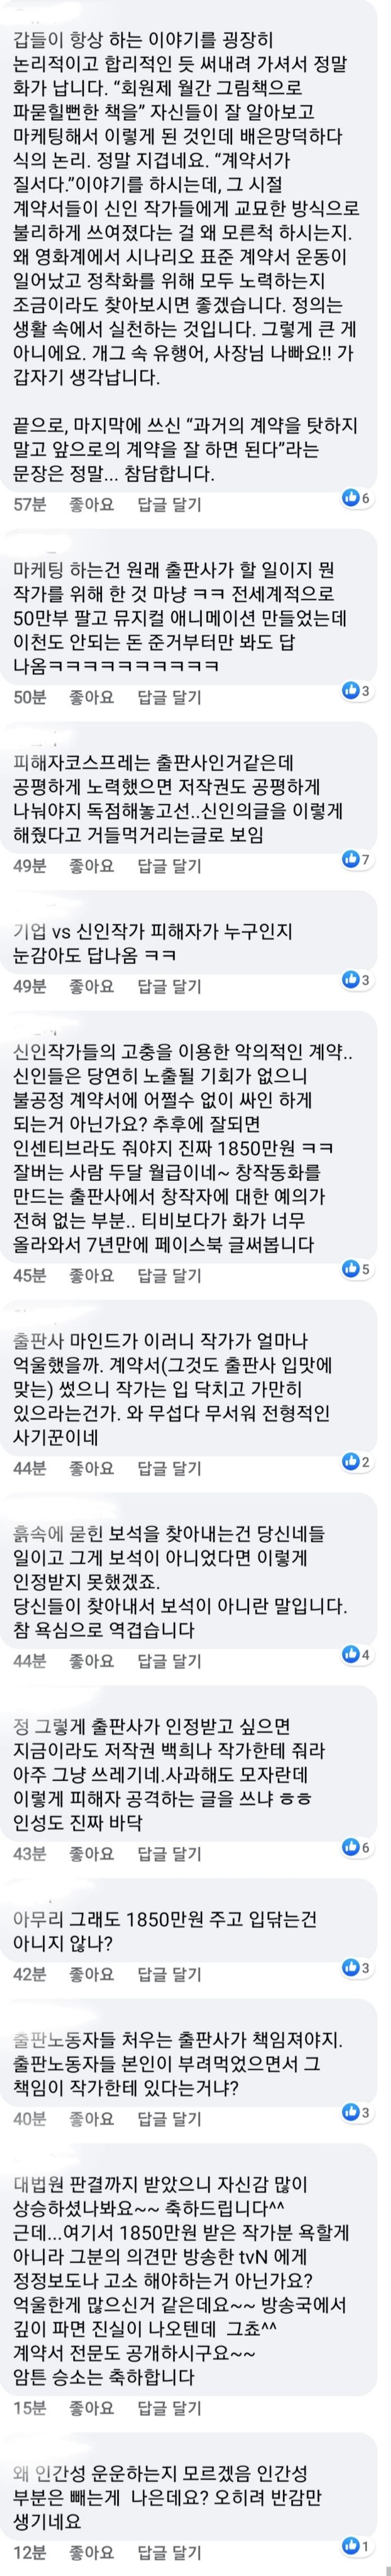 구름빵 출판사 대표 페이스북 댓글